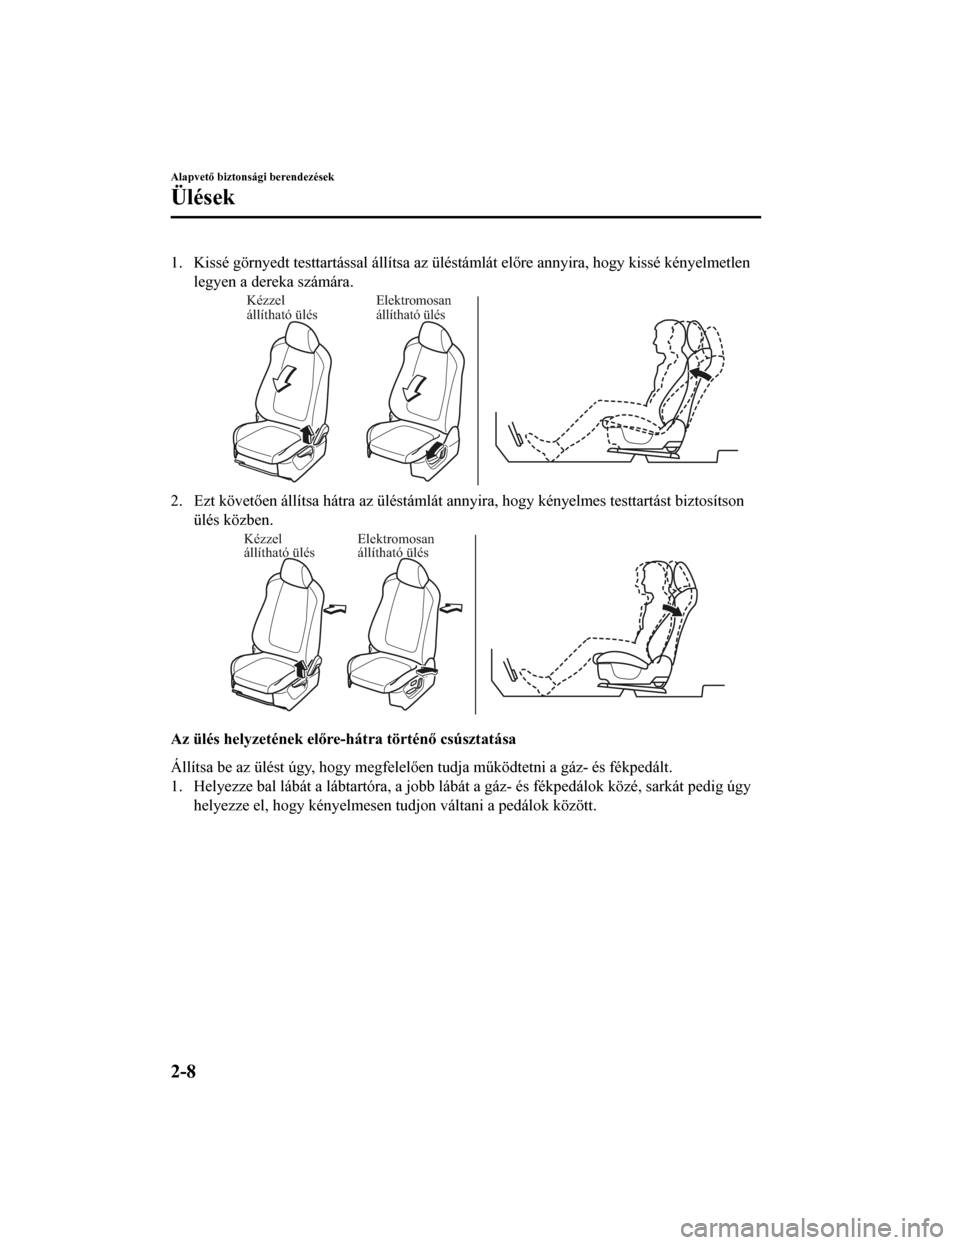 MAZDA MODEL CX-5 2019  Kezelési útmutató (in Hungarian) 1. Kissé görnyedt testtartással állítsa az üléstámlát előre annyira, hogy kissé kényelmetlen
legyen a dereka számára.
Kézzel 
állítható ülés Elektromosan 
állítható ülés
2. Ez